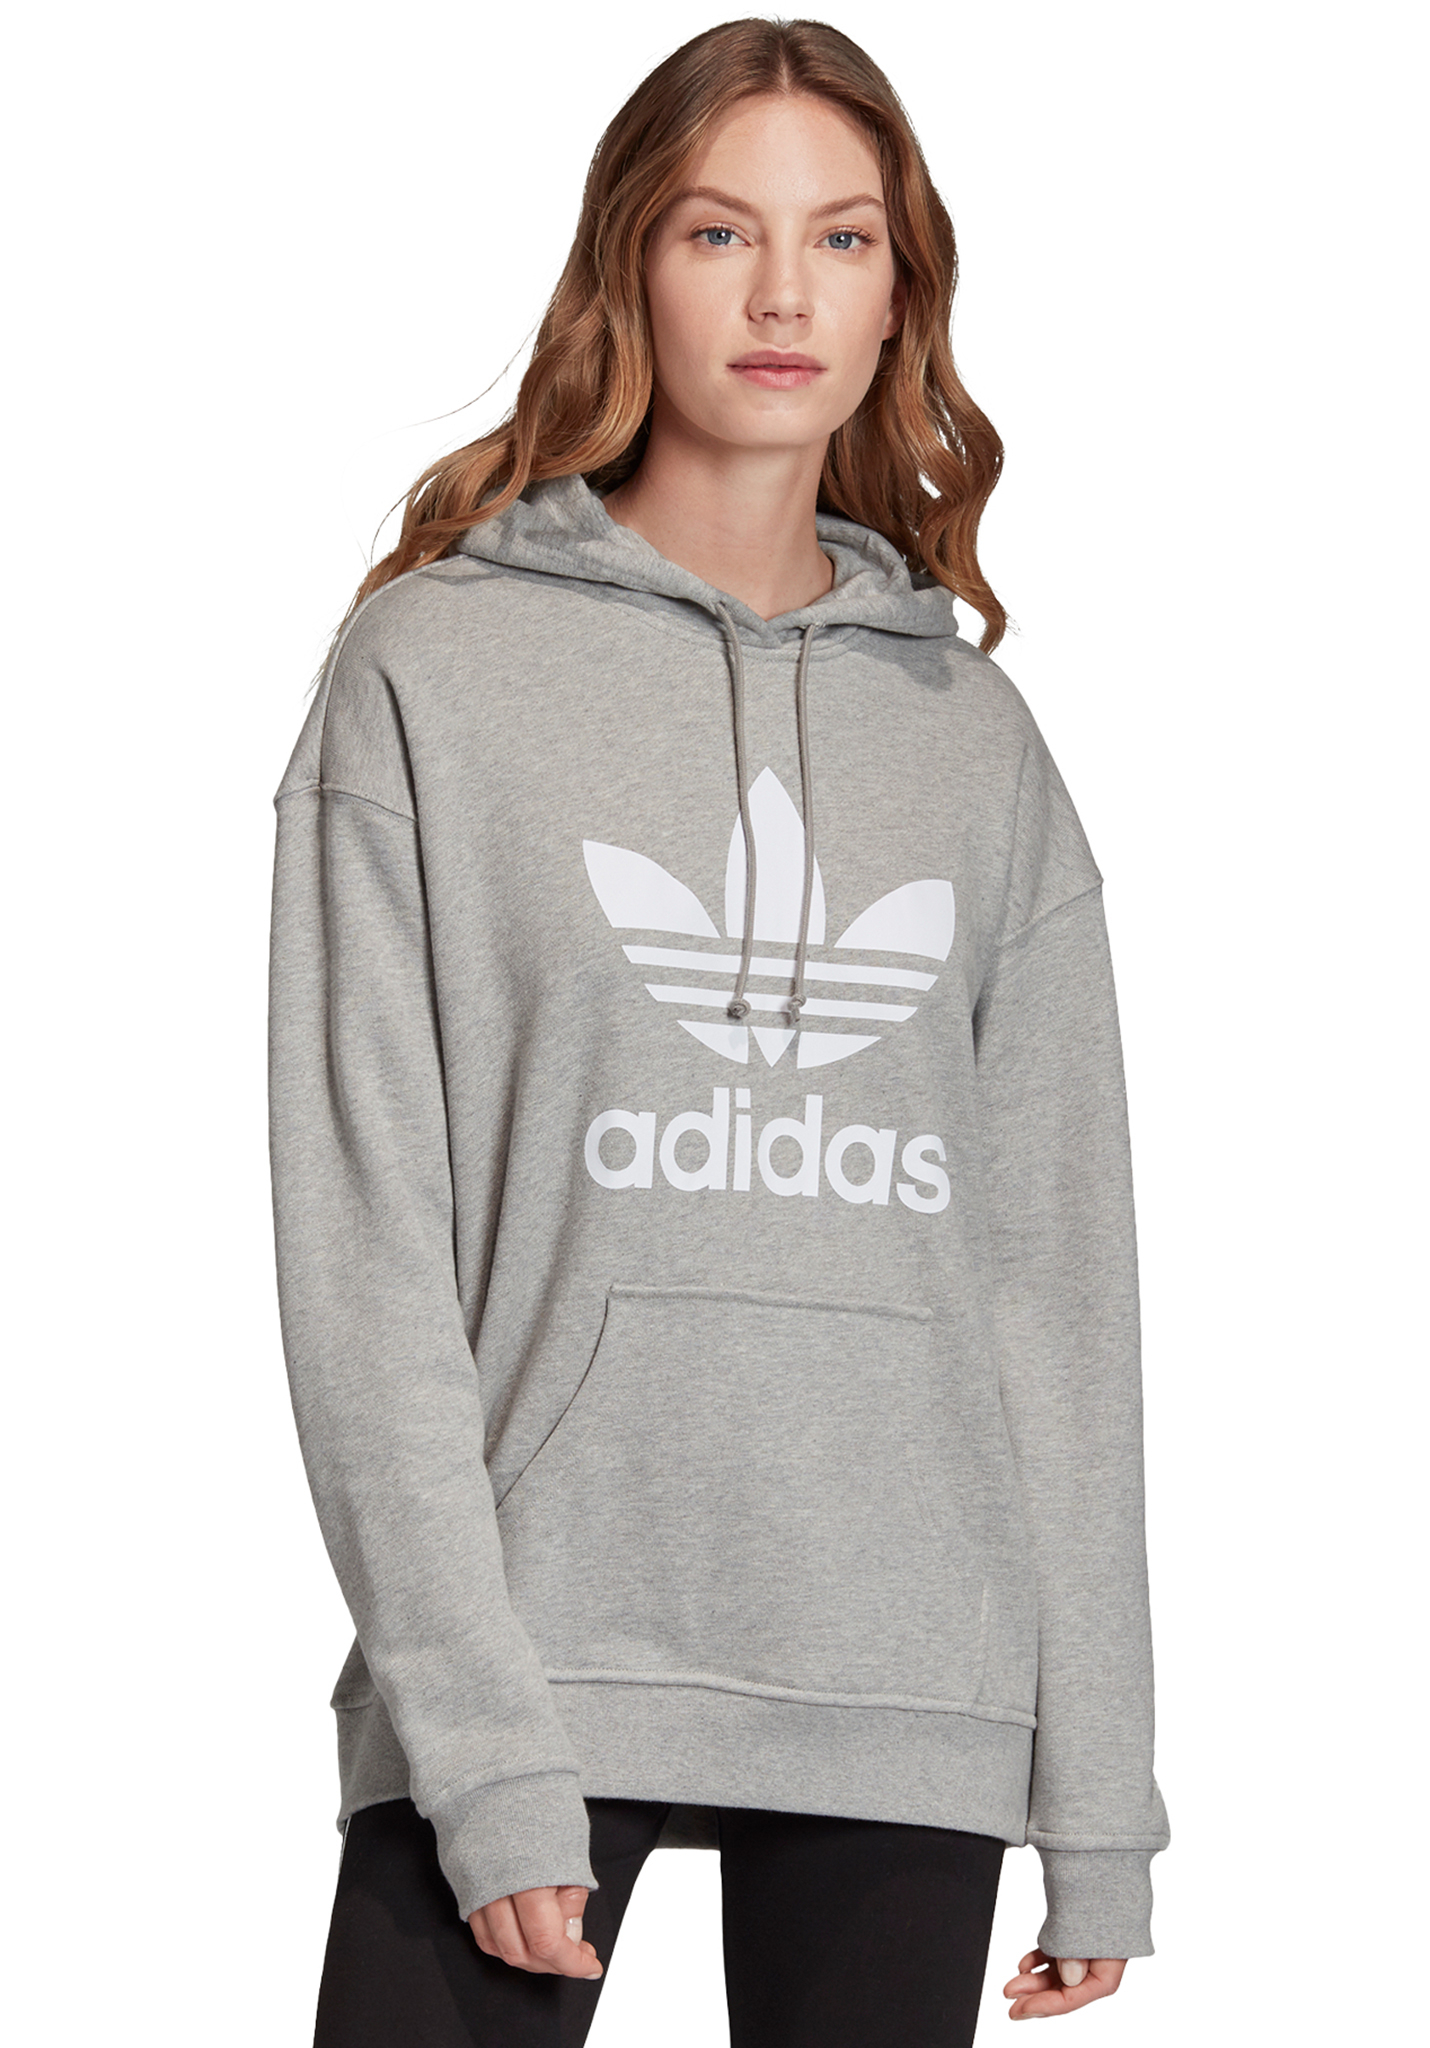 Adidas Originals Trefoil Hoodies mittelgrau heather/weiß 34